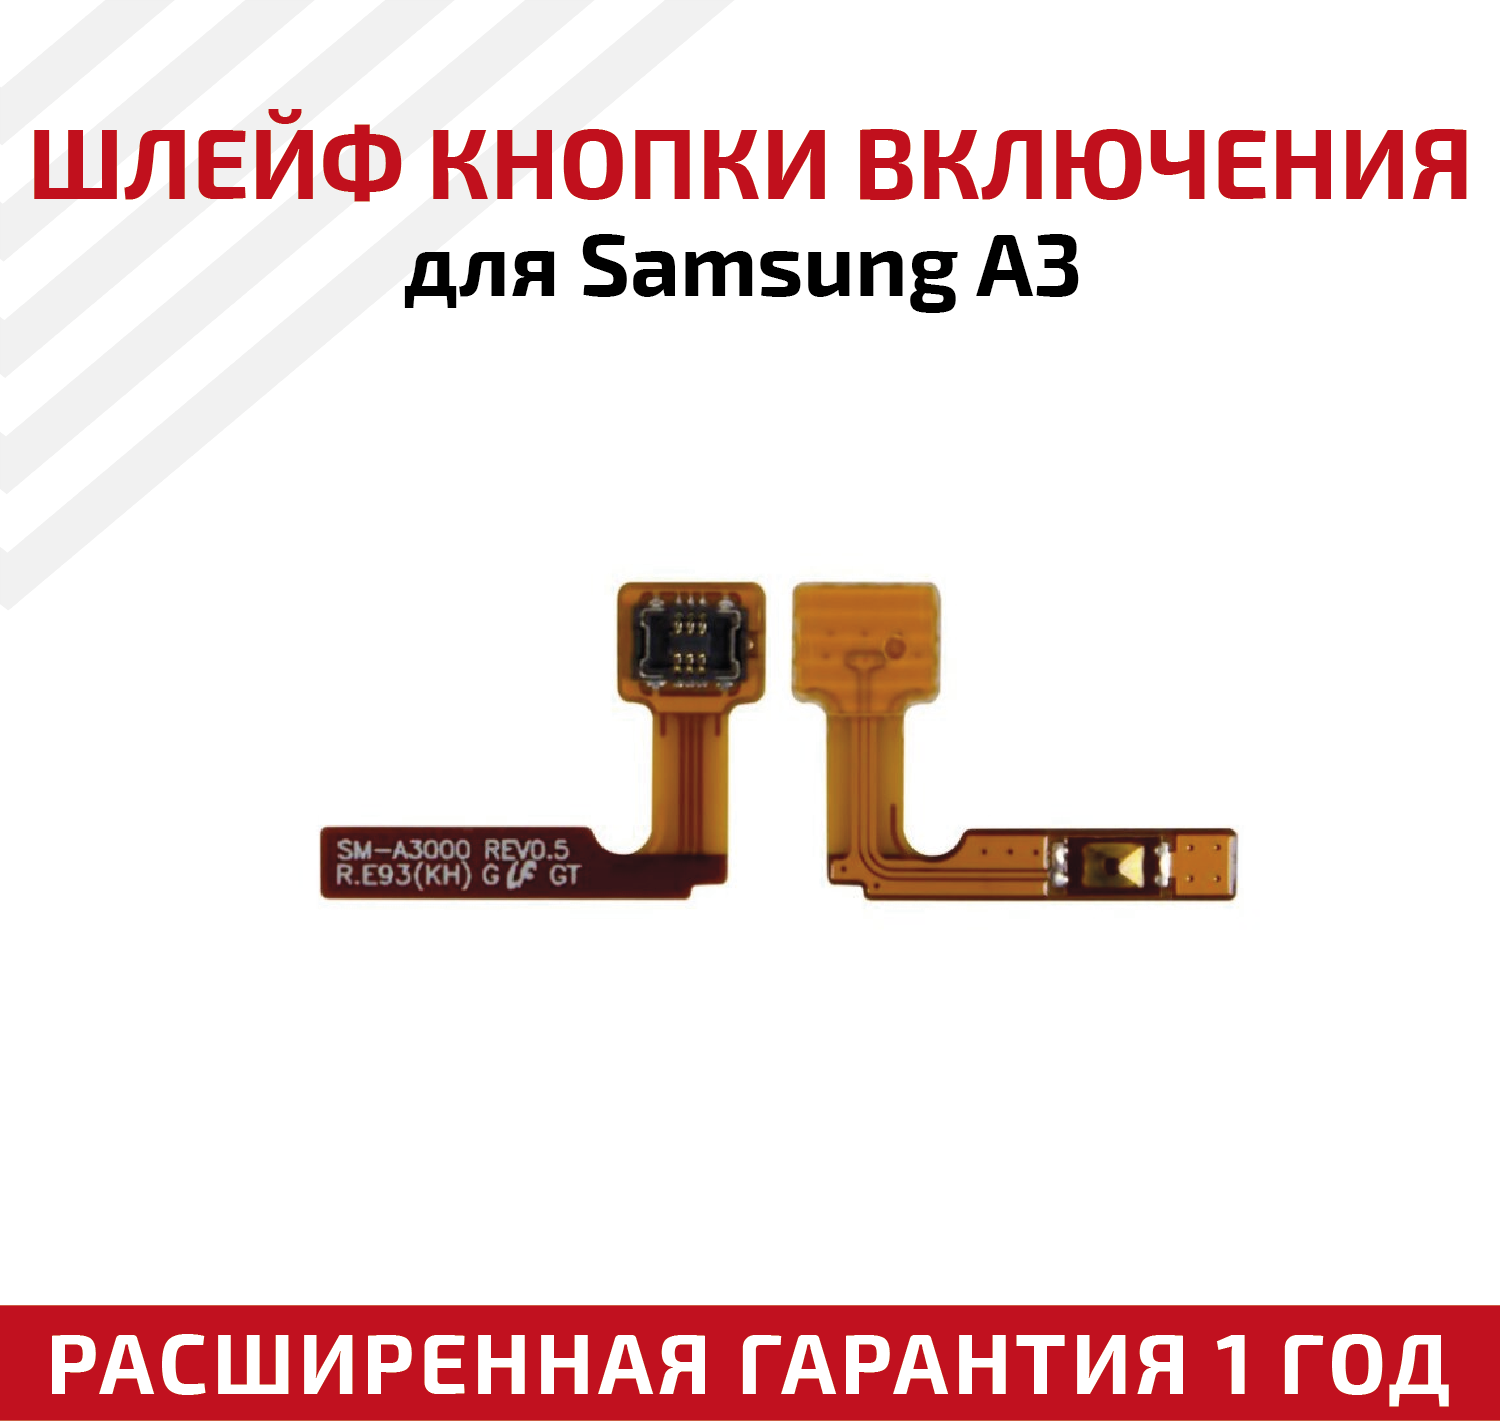 Шлейф кнопки включения для мобильного телефона (смартфона) Samsung Galaxy A3